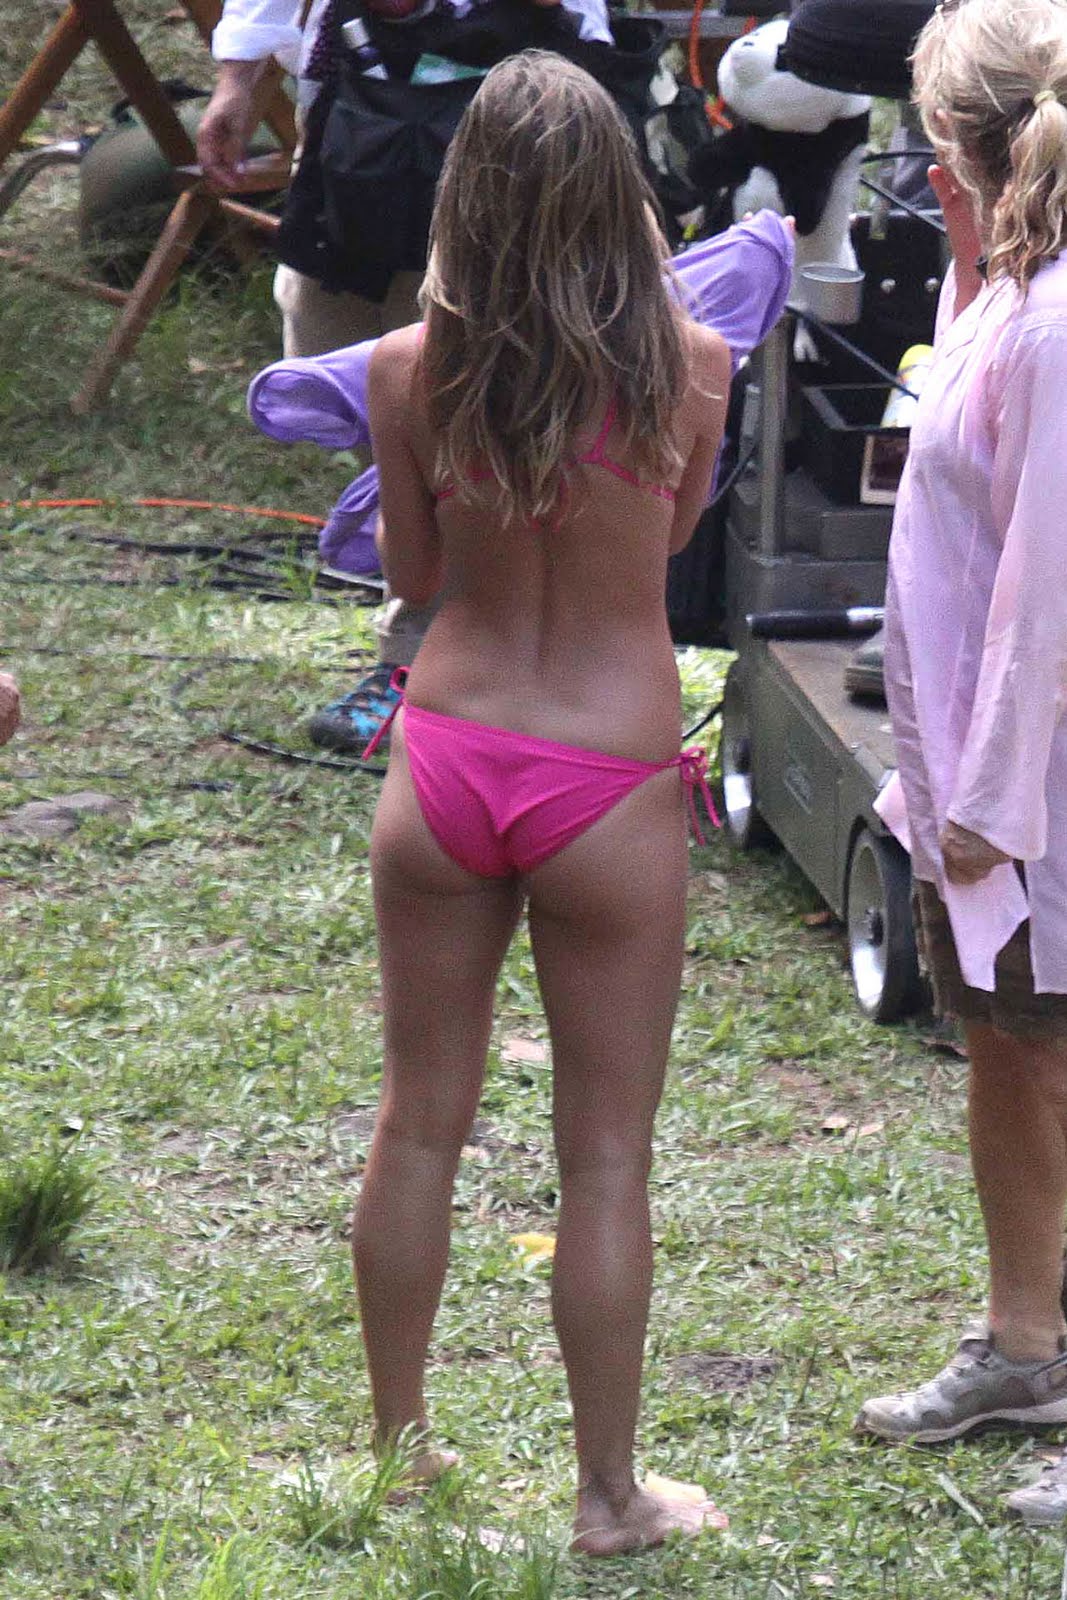 http://4.bp.blogspot.com/_tX-oD9Fr7iw/S_0q6p3SOCI/AAAAAAAAB_Q/dQRxFgO--2I/s1600/jennifer-aniston-pink-bikini-05.jpg